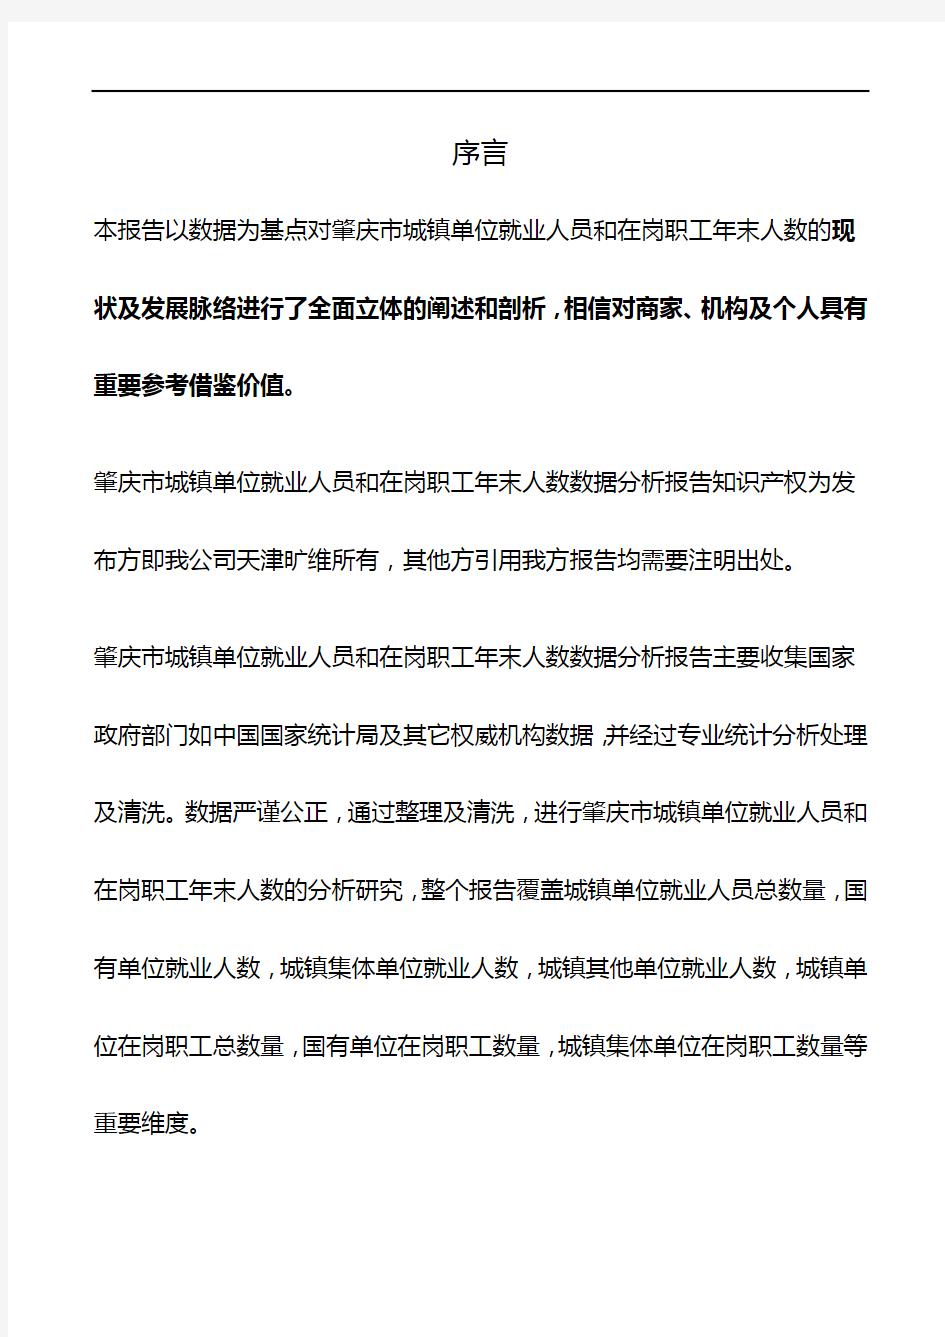 广东省肇庆市城镇单位就业人员和在岗职工年末人数数据分析报告2019版